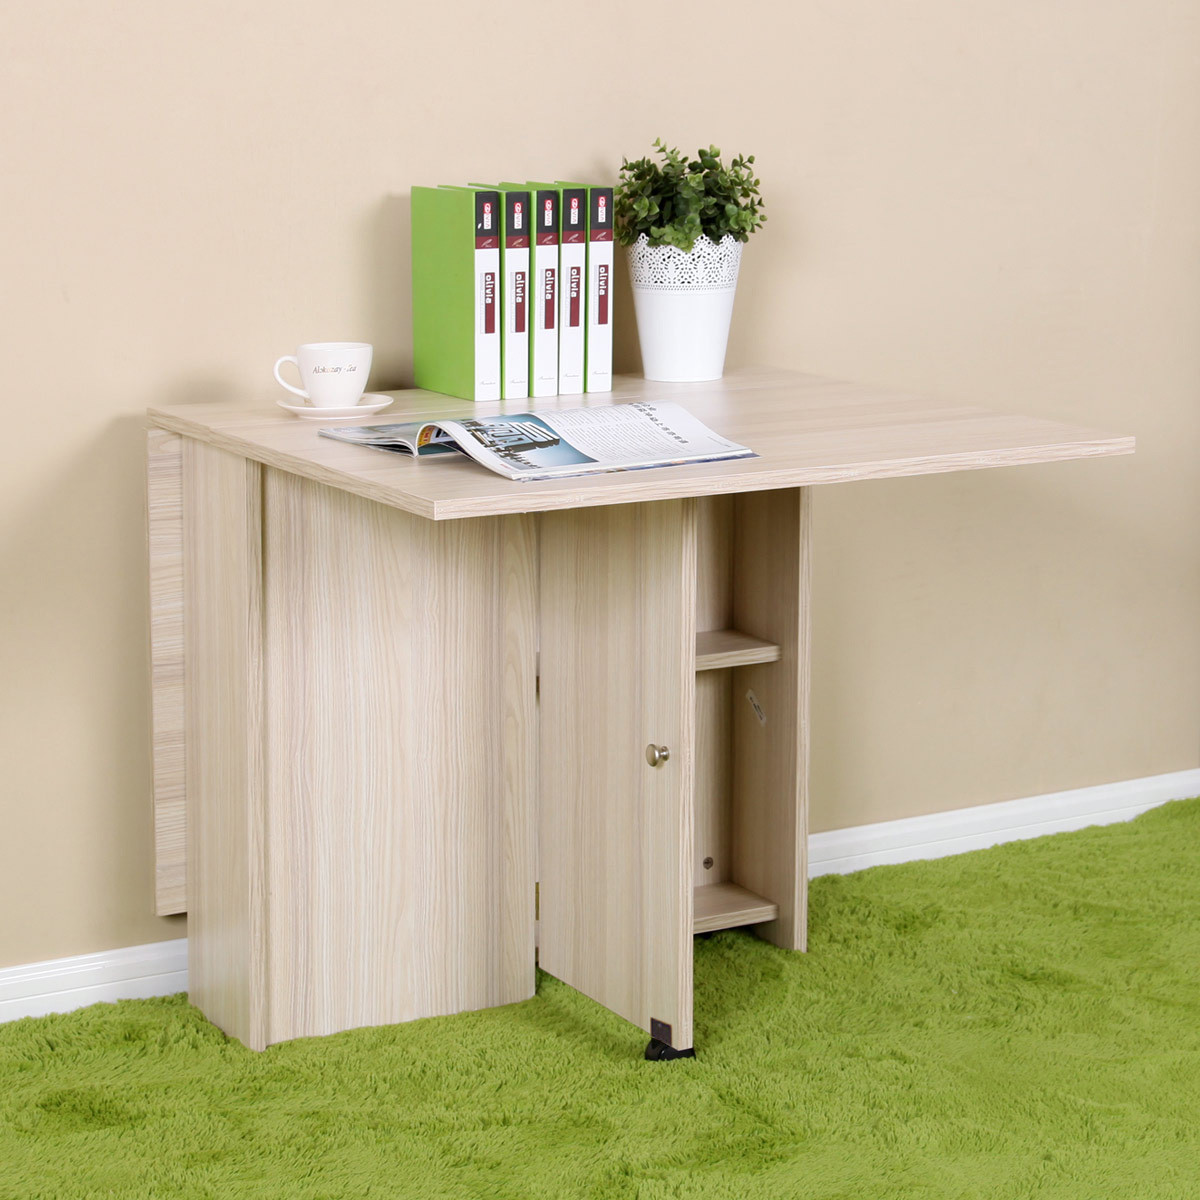 美达斯 枫木色白色胡桃木色人造板刨花板/三聚氰胺板简约现代 折叠桌